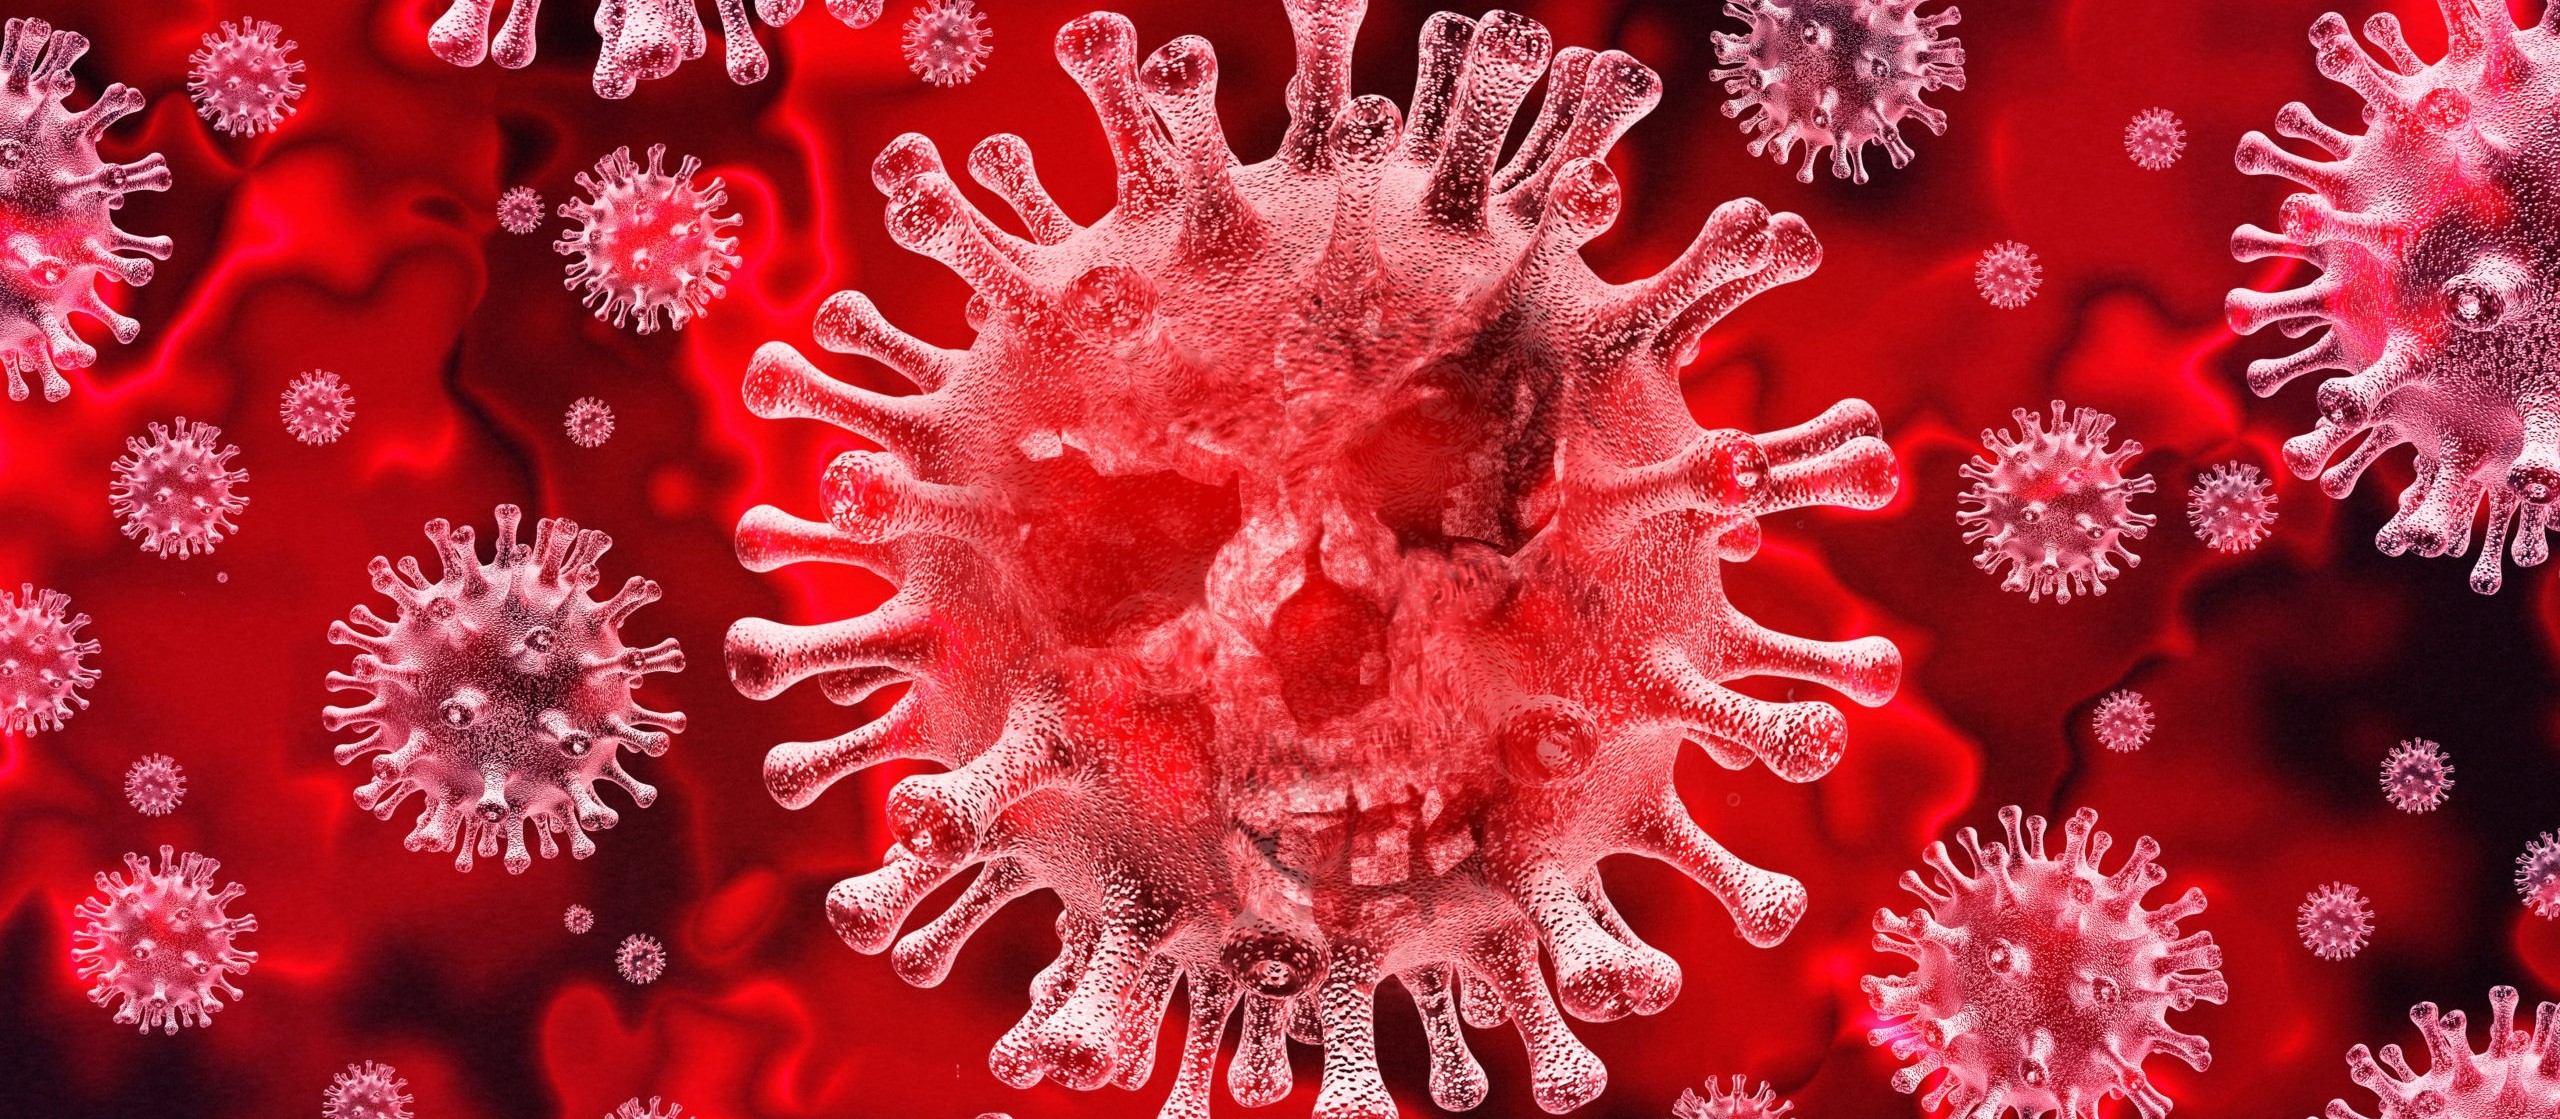 Profissional da saúde é o 14º caso confirmado de coronavírus em Cianorte